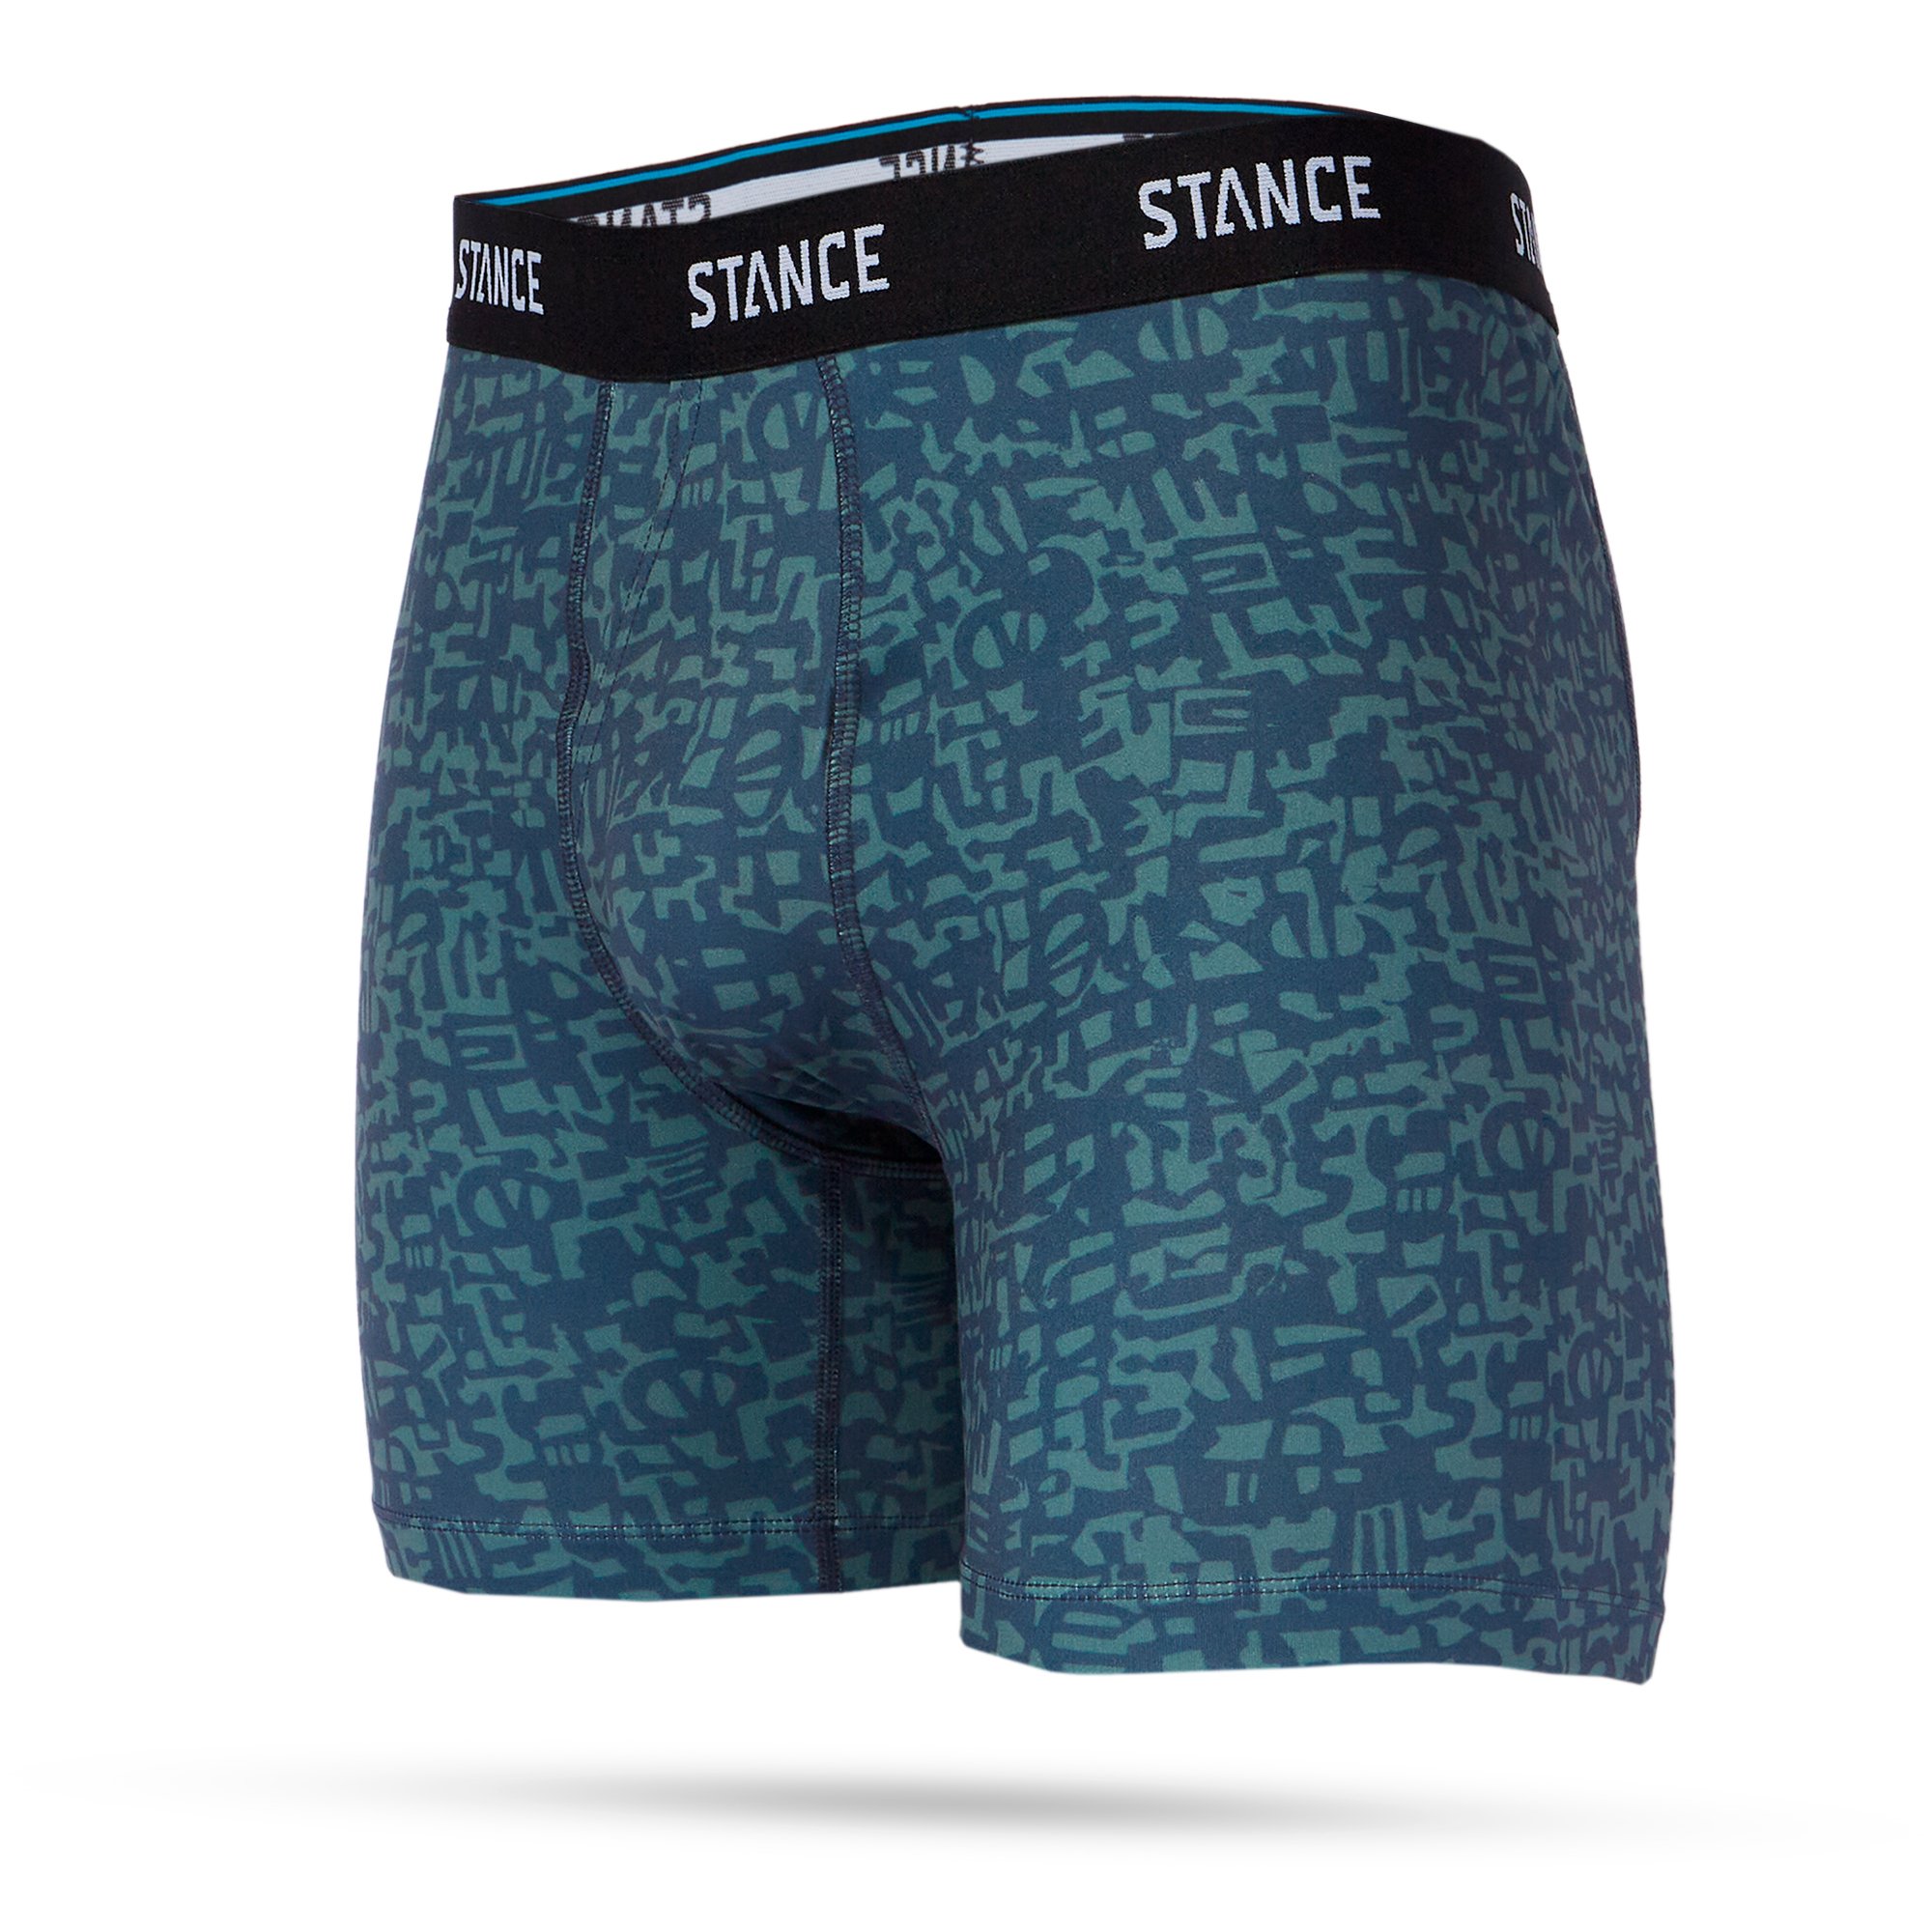 Stance Poly Boxer Brief Underwear